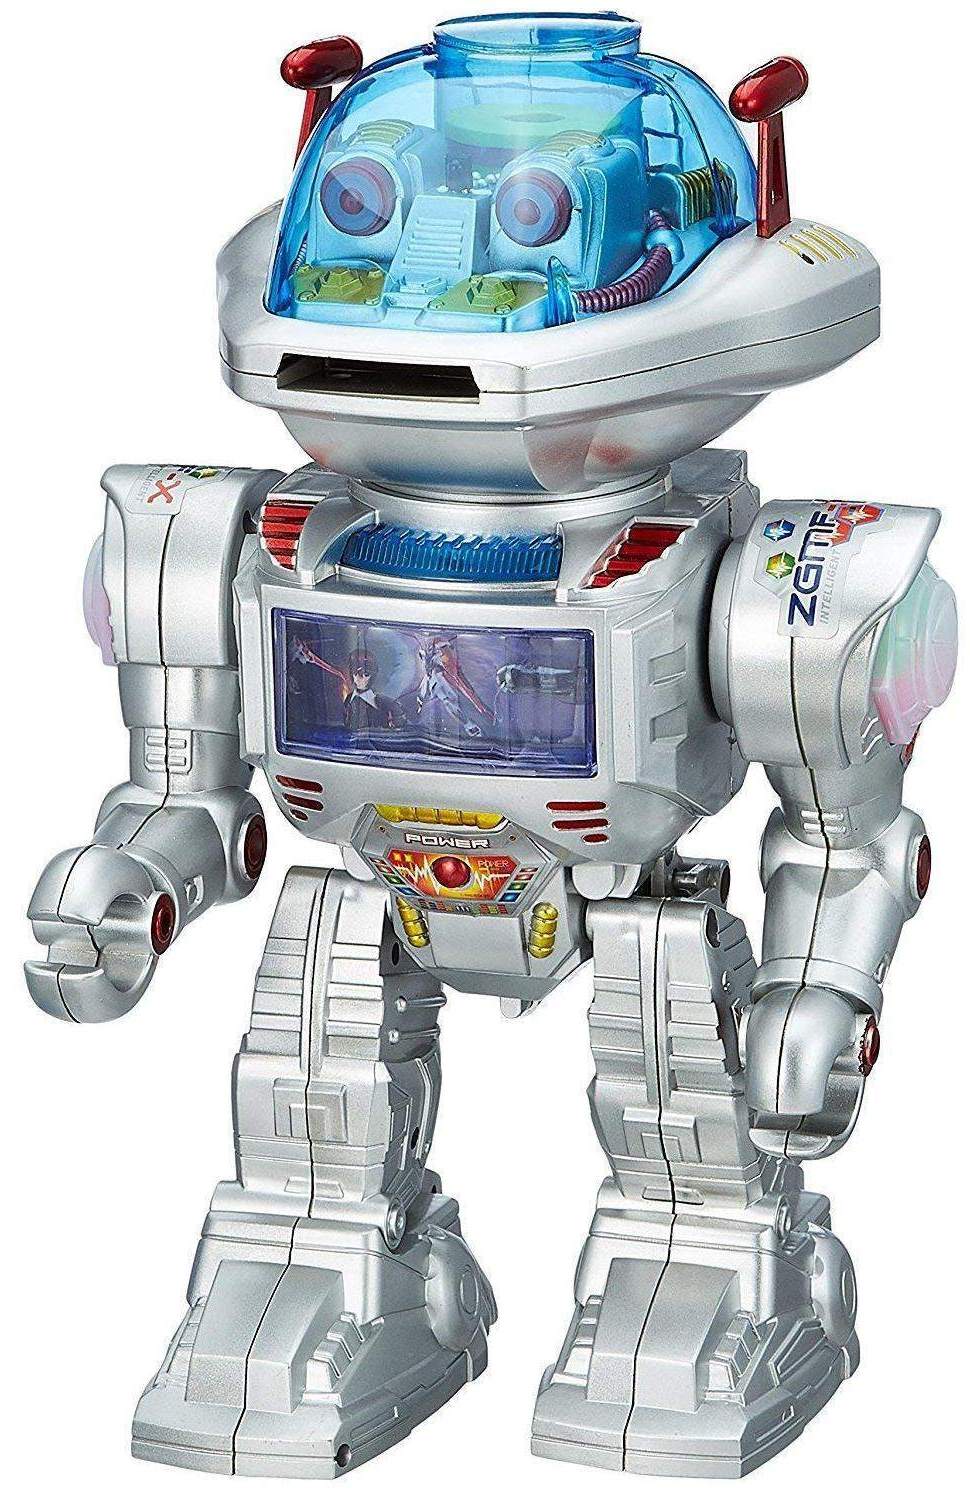 No. 1 Intelligent, Toy Robots Wiki